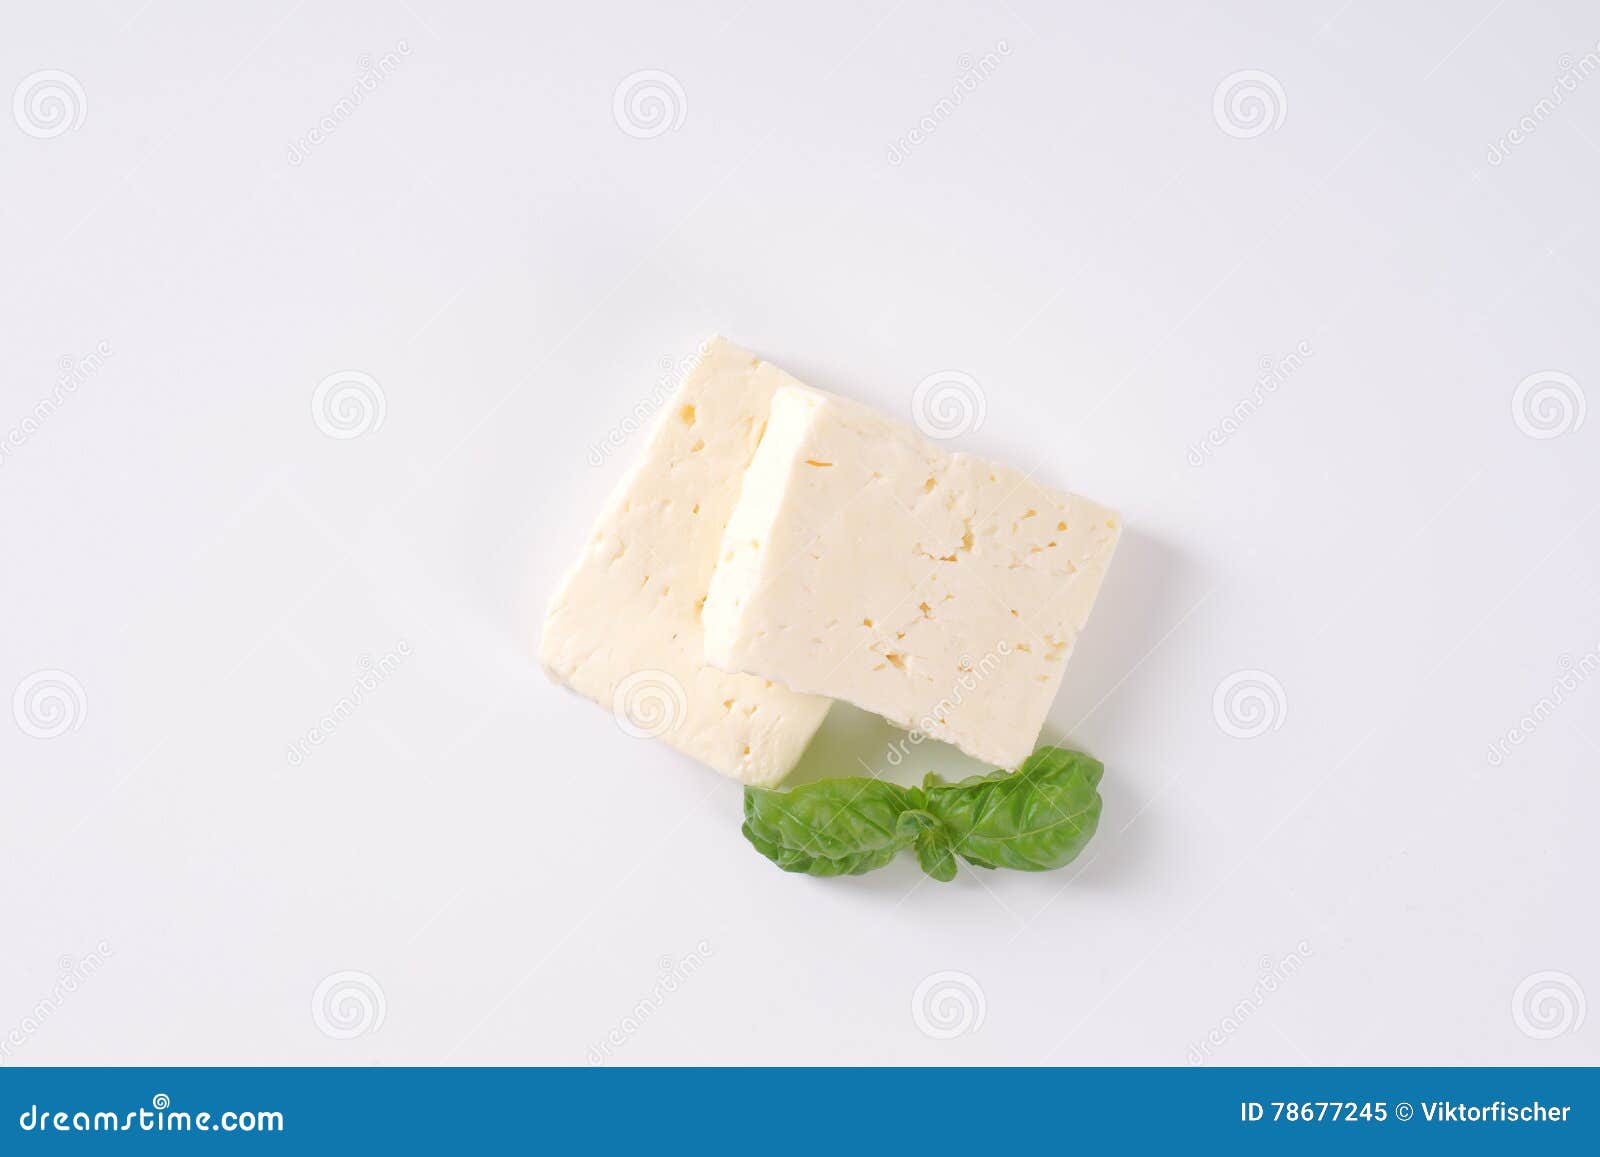 希腊白软干酪 库存照片. 图片 包括有 手工制造, 希腊语, 牌照, 空白, 维生素, 产品, 绵羊, 牛至 - 41140722